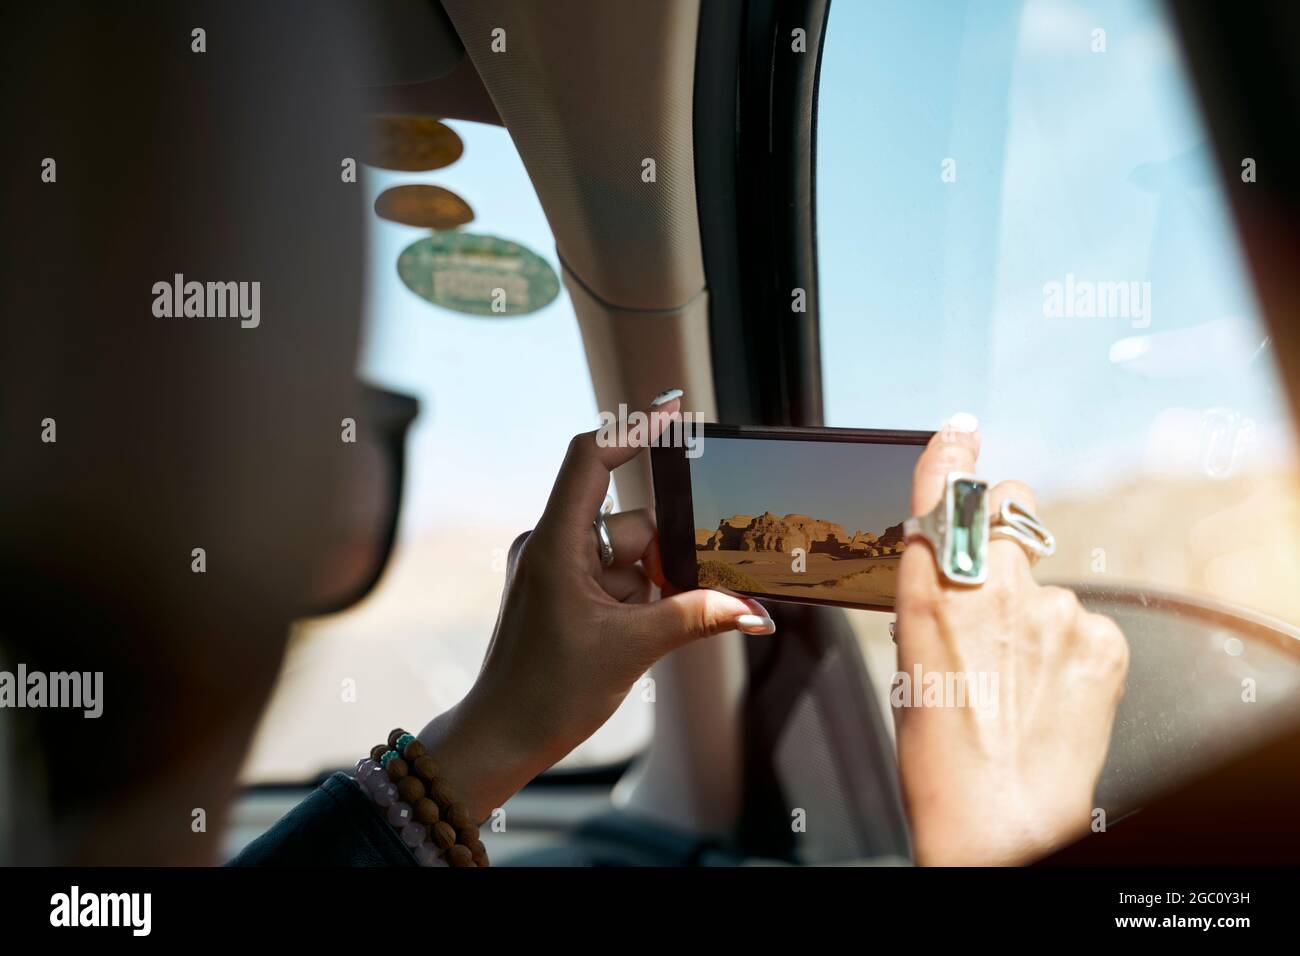 passager touristique asiatique prenant une photo à l'aide d'un téléphone portable depuis l'intérieur d'une voiture Banque D'Images